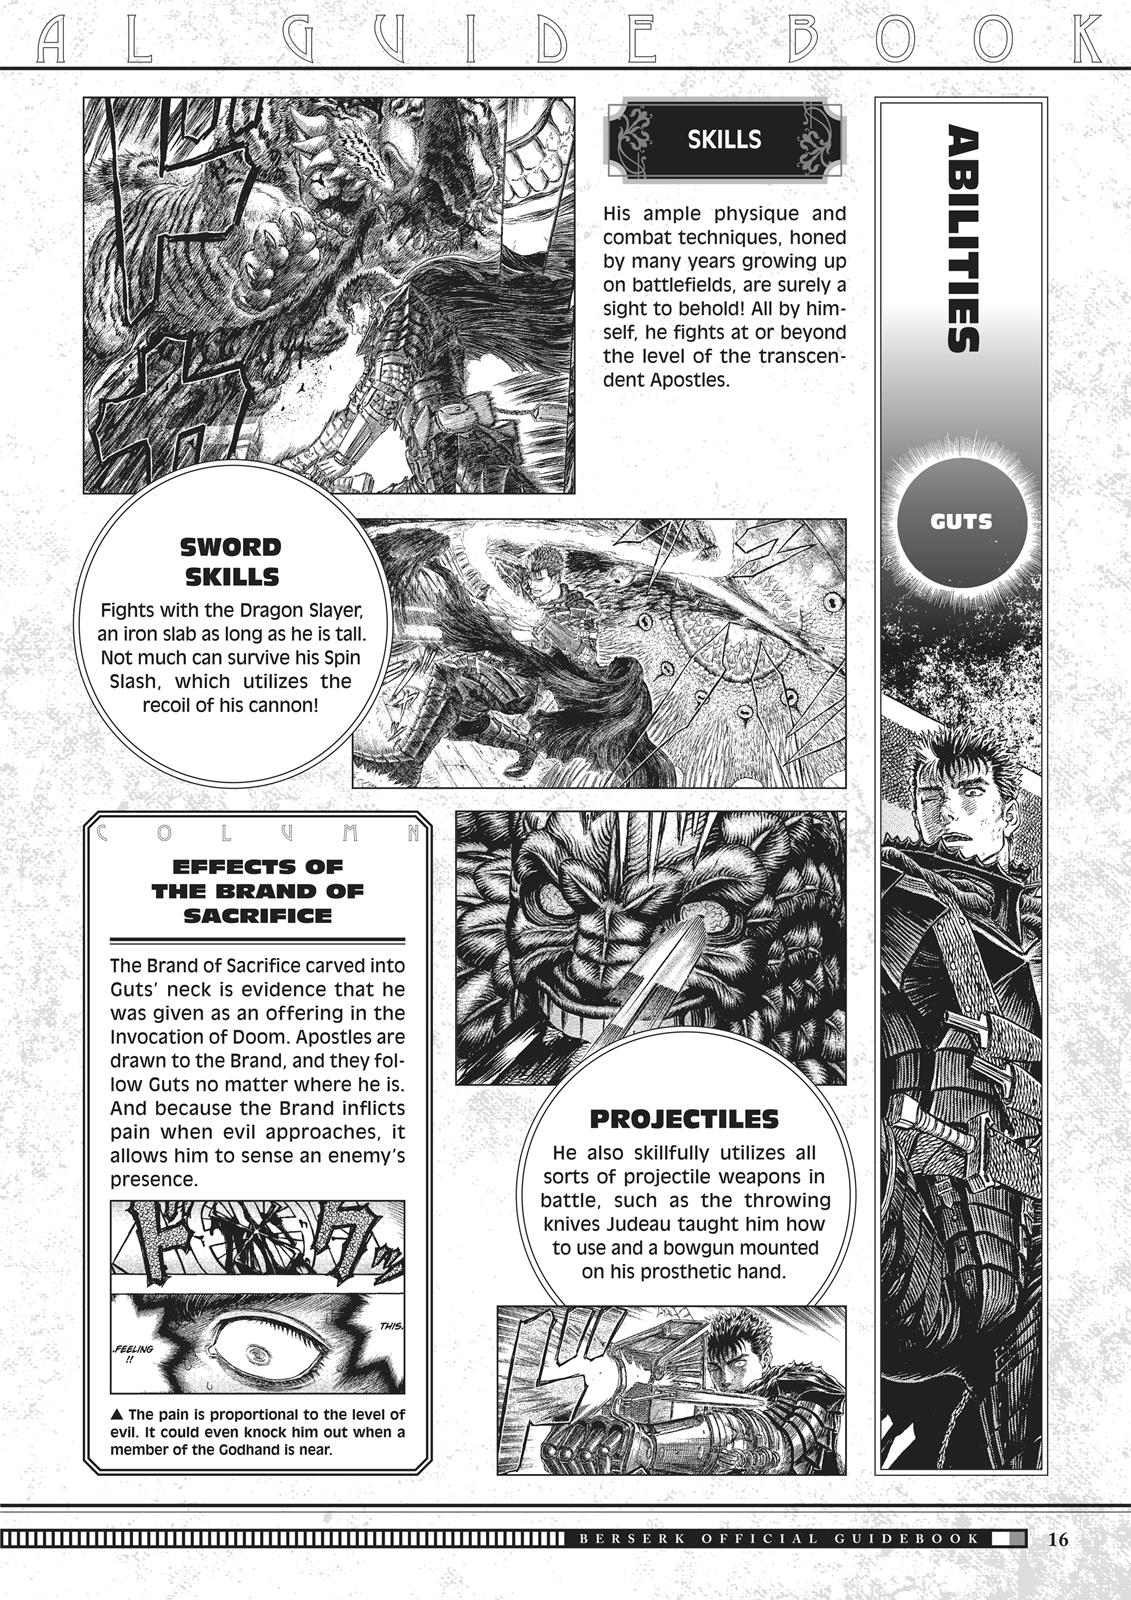 Berserk Manga Chapter 350.5 image 017